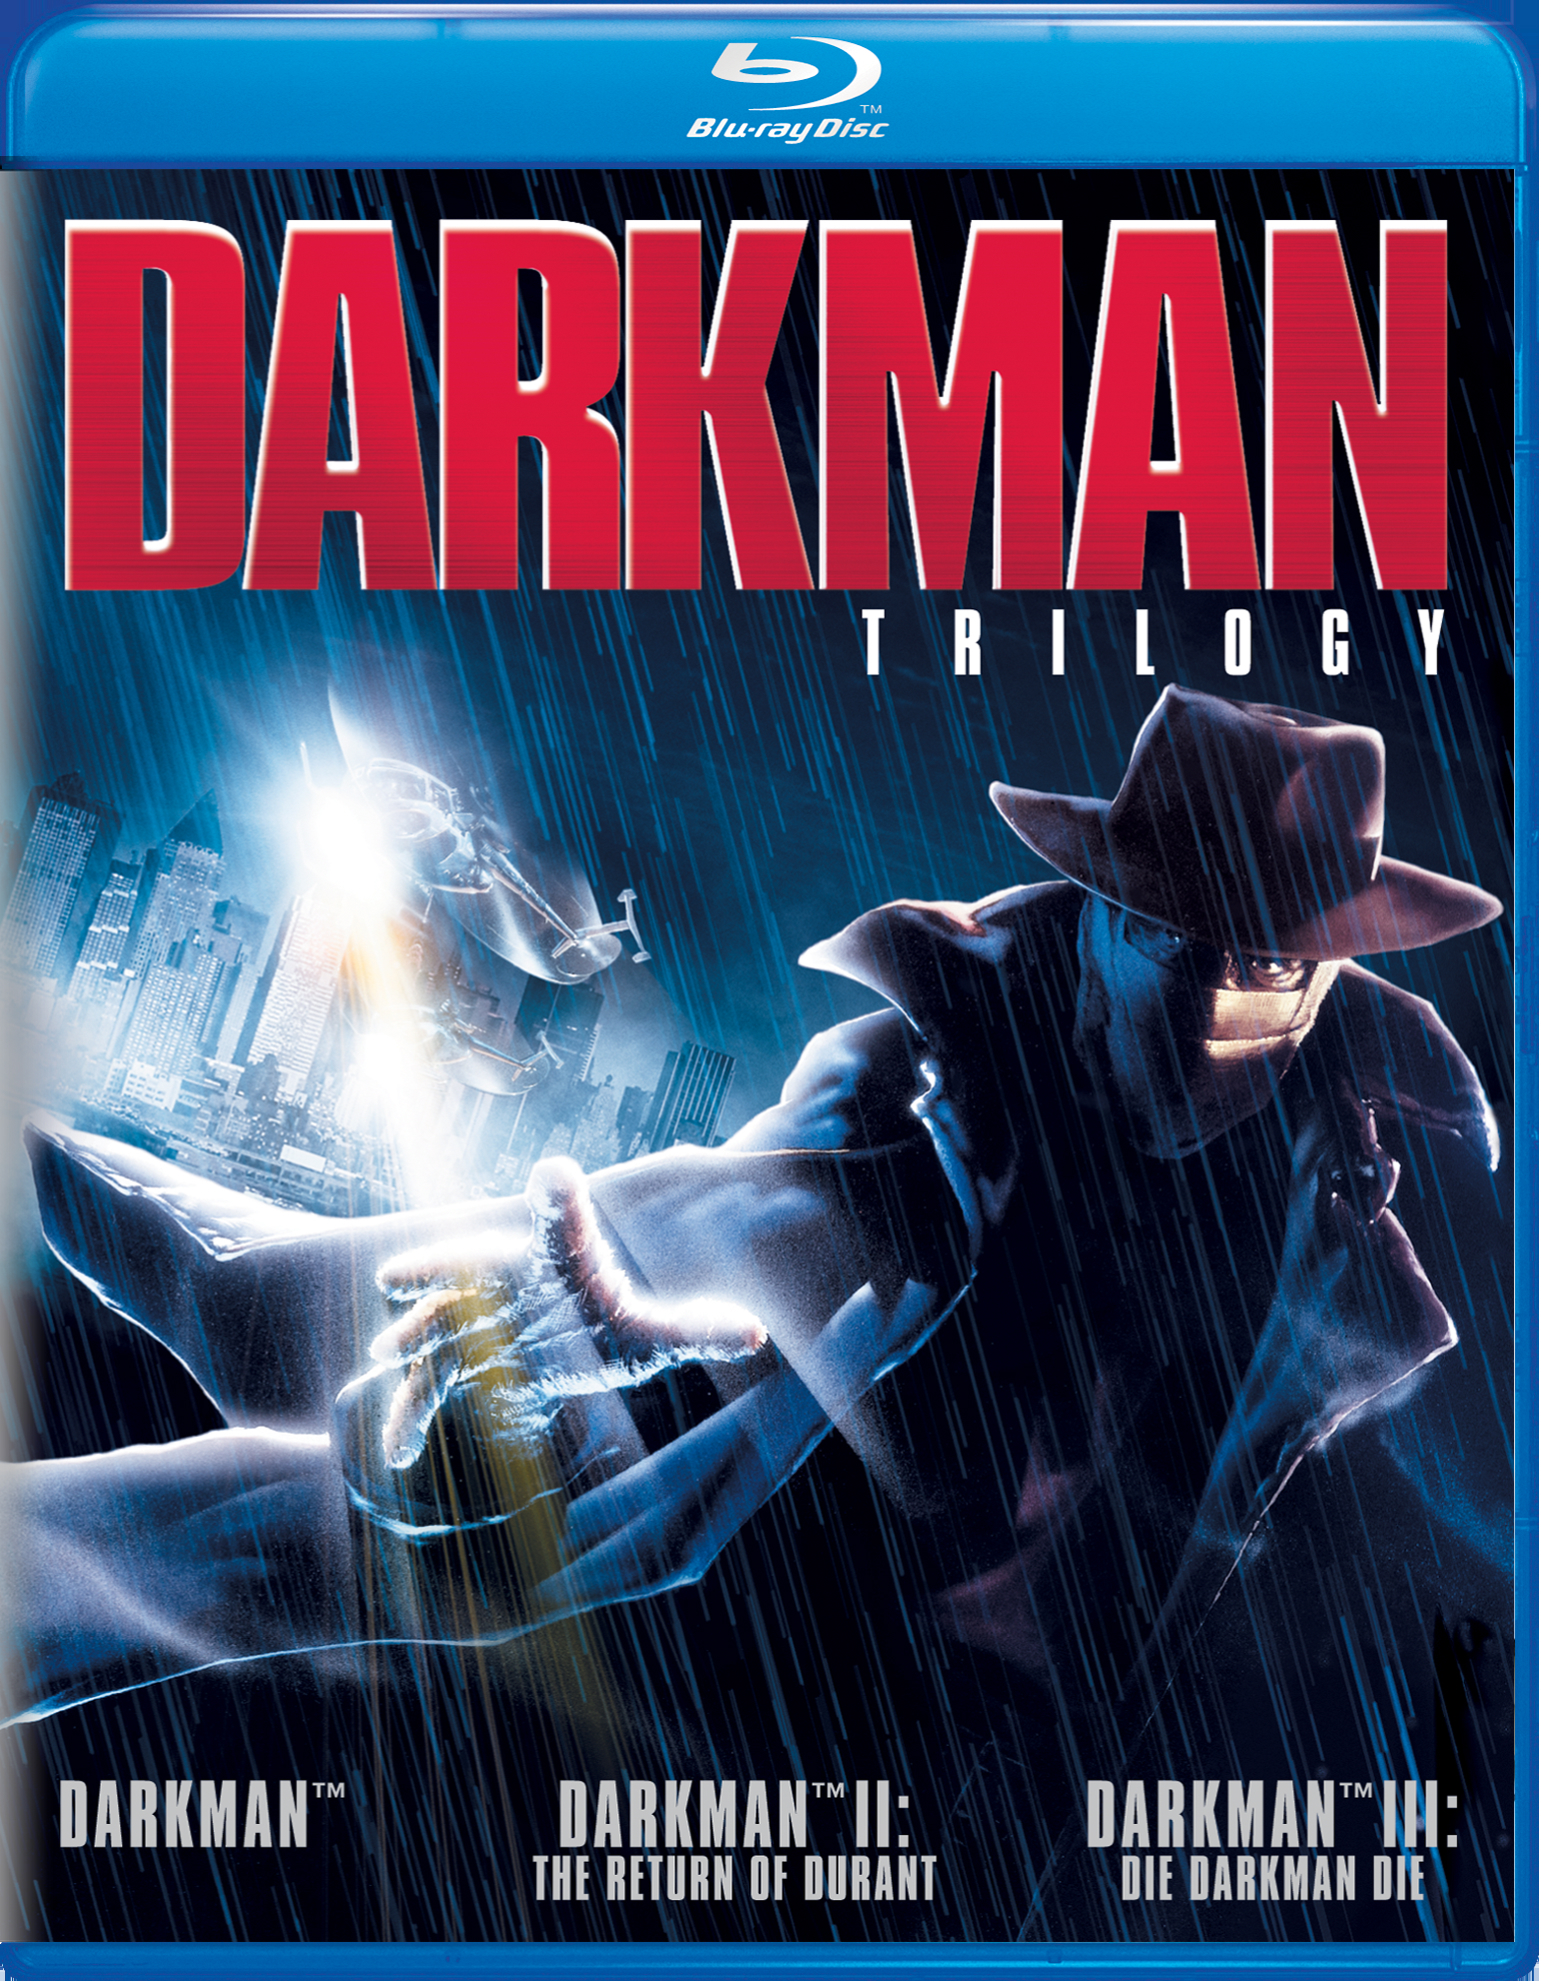 Darkman/Darkman 2/Darkman 3 (Blu-ray Set) - Blu-ray   - Action Movies On Blu-ray - Movies On GRUV